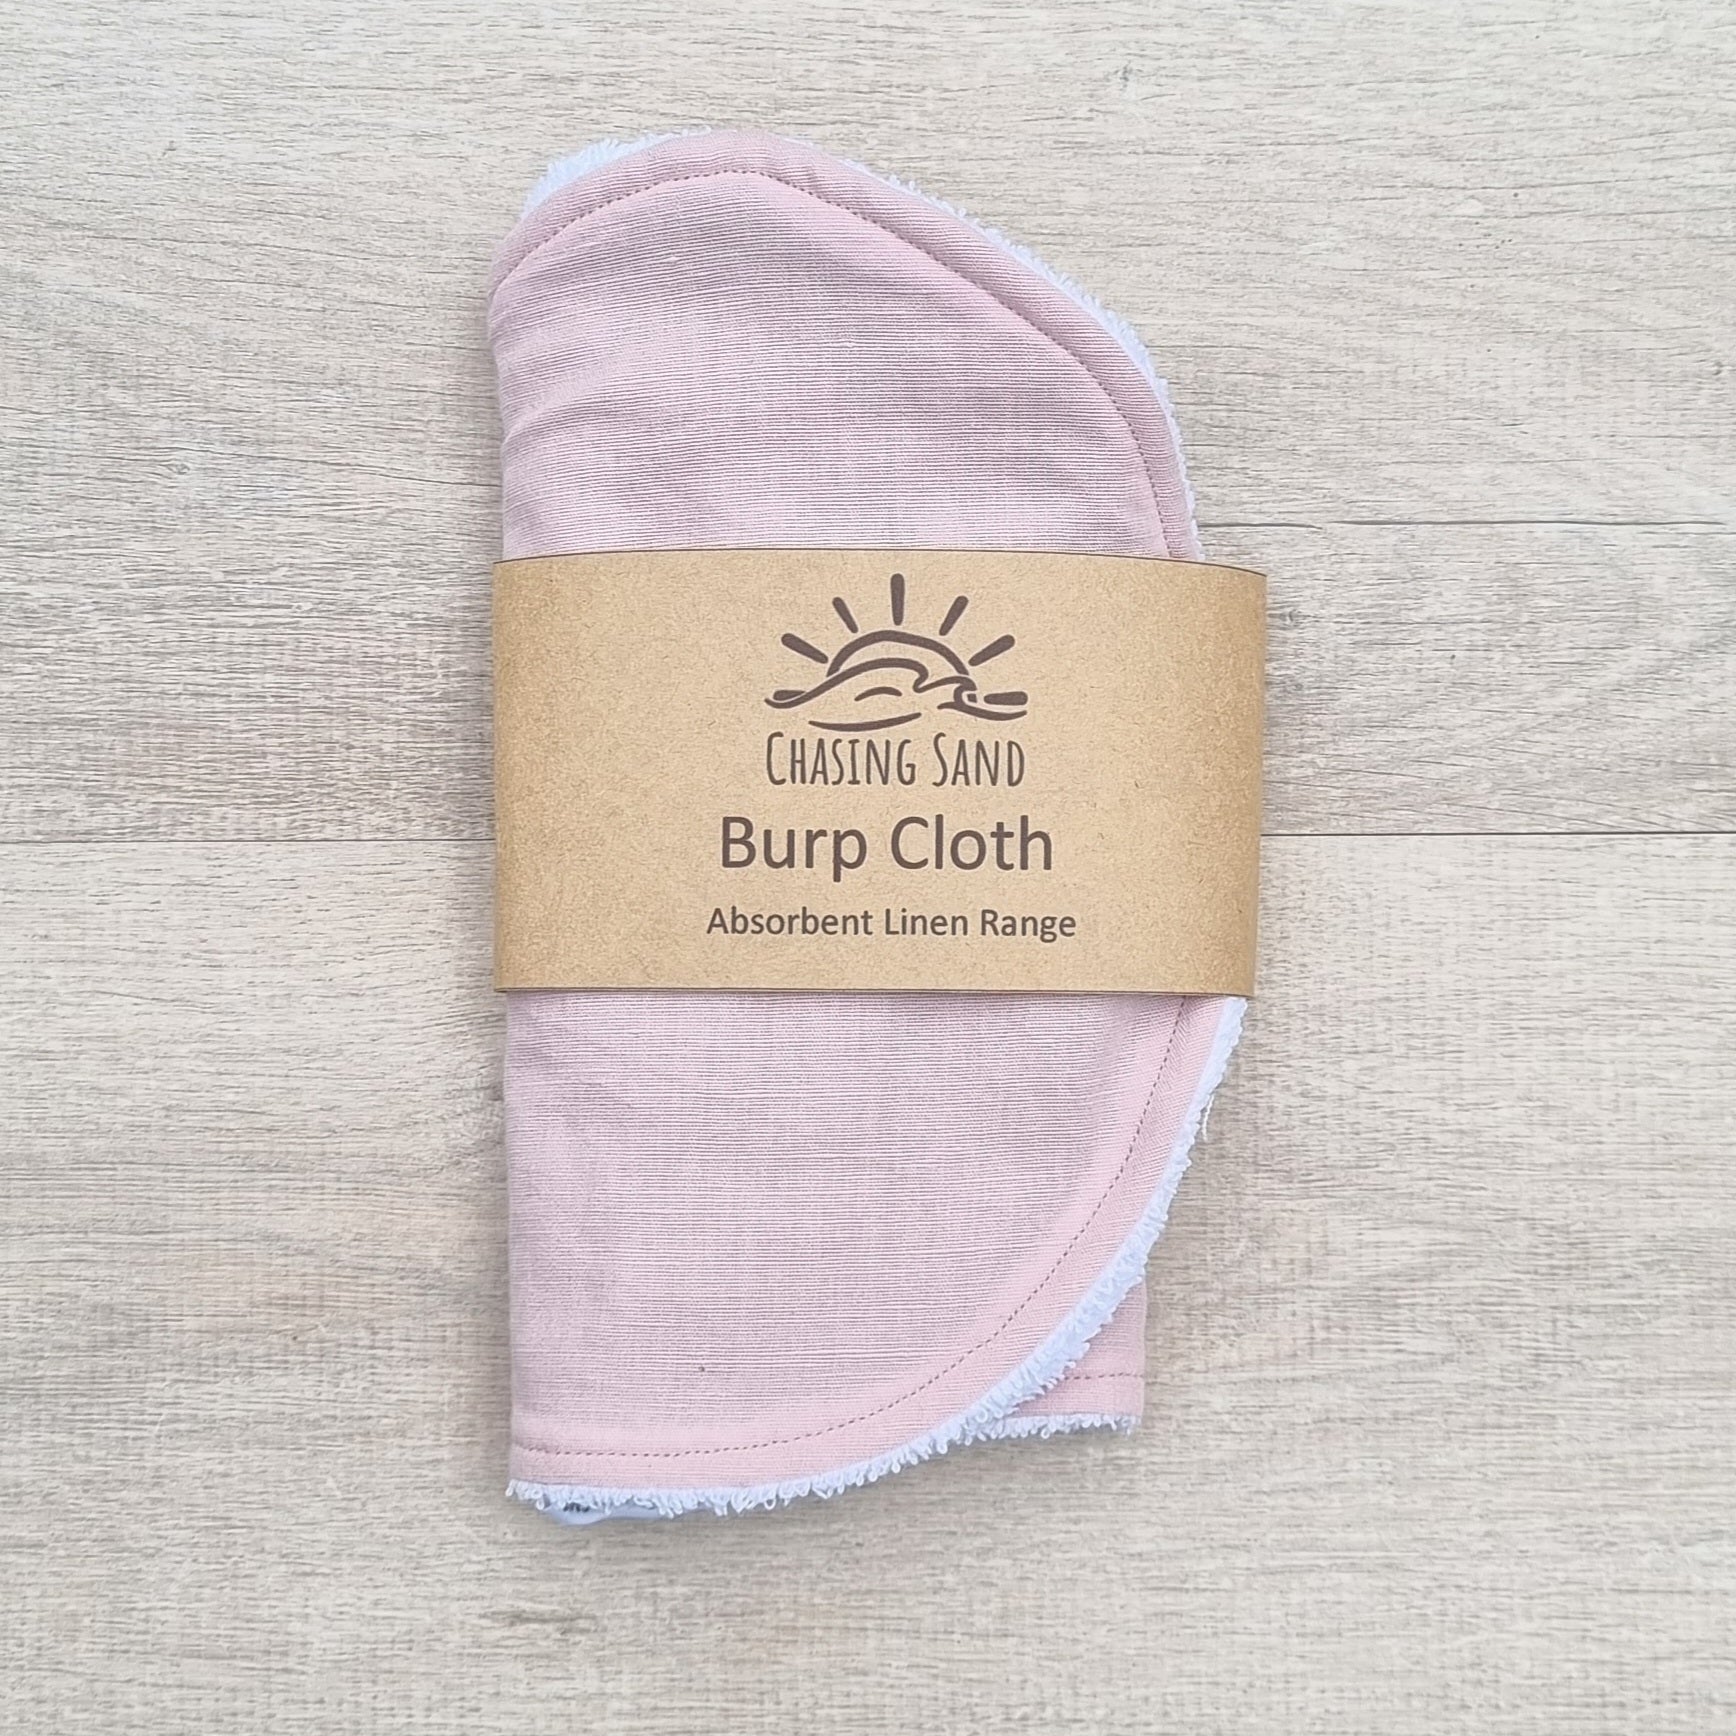 Burp Cloth - Pink Linen against wooden backdrop. Soft pastel pink colour.